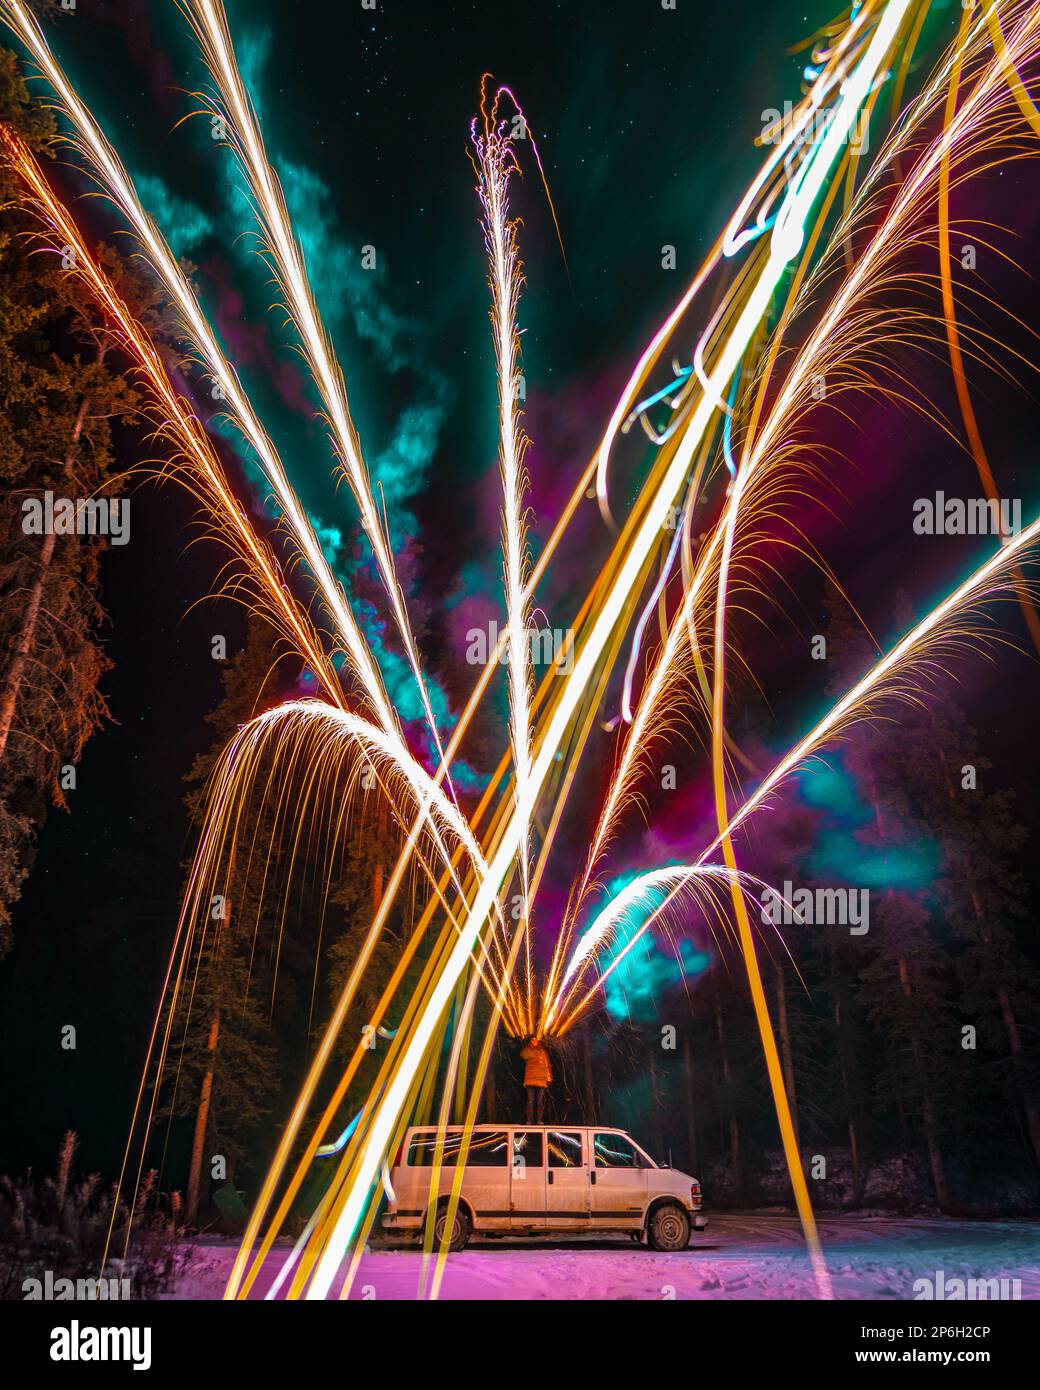 Feux d'artifice multicolores photographiés dans une région sauvage sombre pour la Saint-Sylvestre, l'anniversaire, la fête et l'anniversaire. Banque D'Images